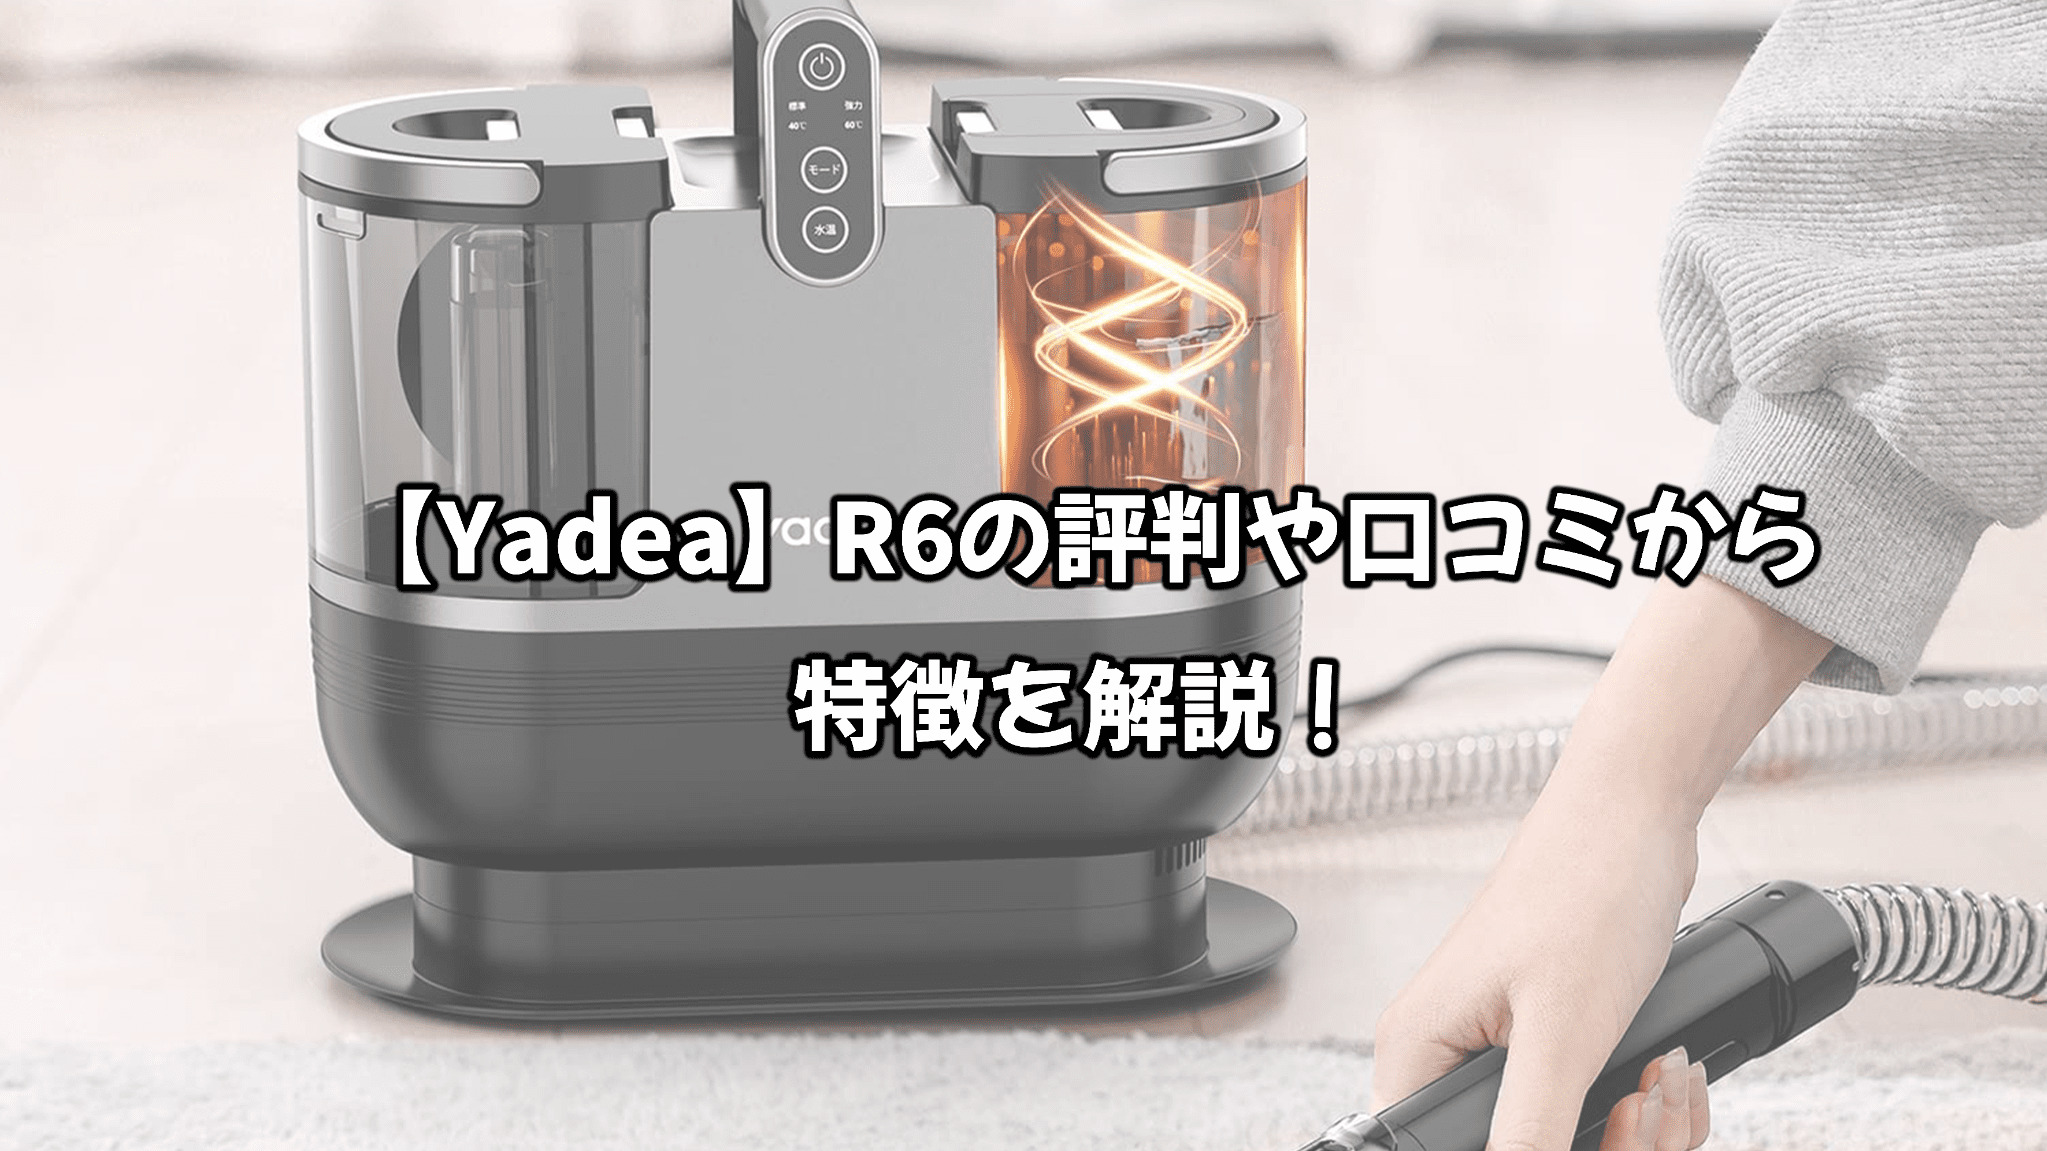 Yadea加熱式リンサー洗浄機 - 掃除機